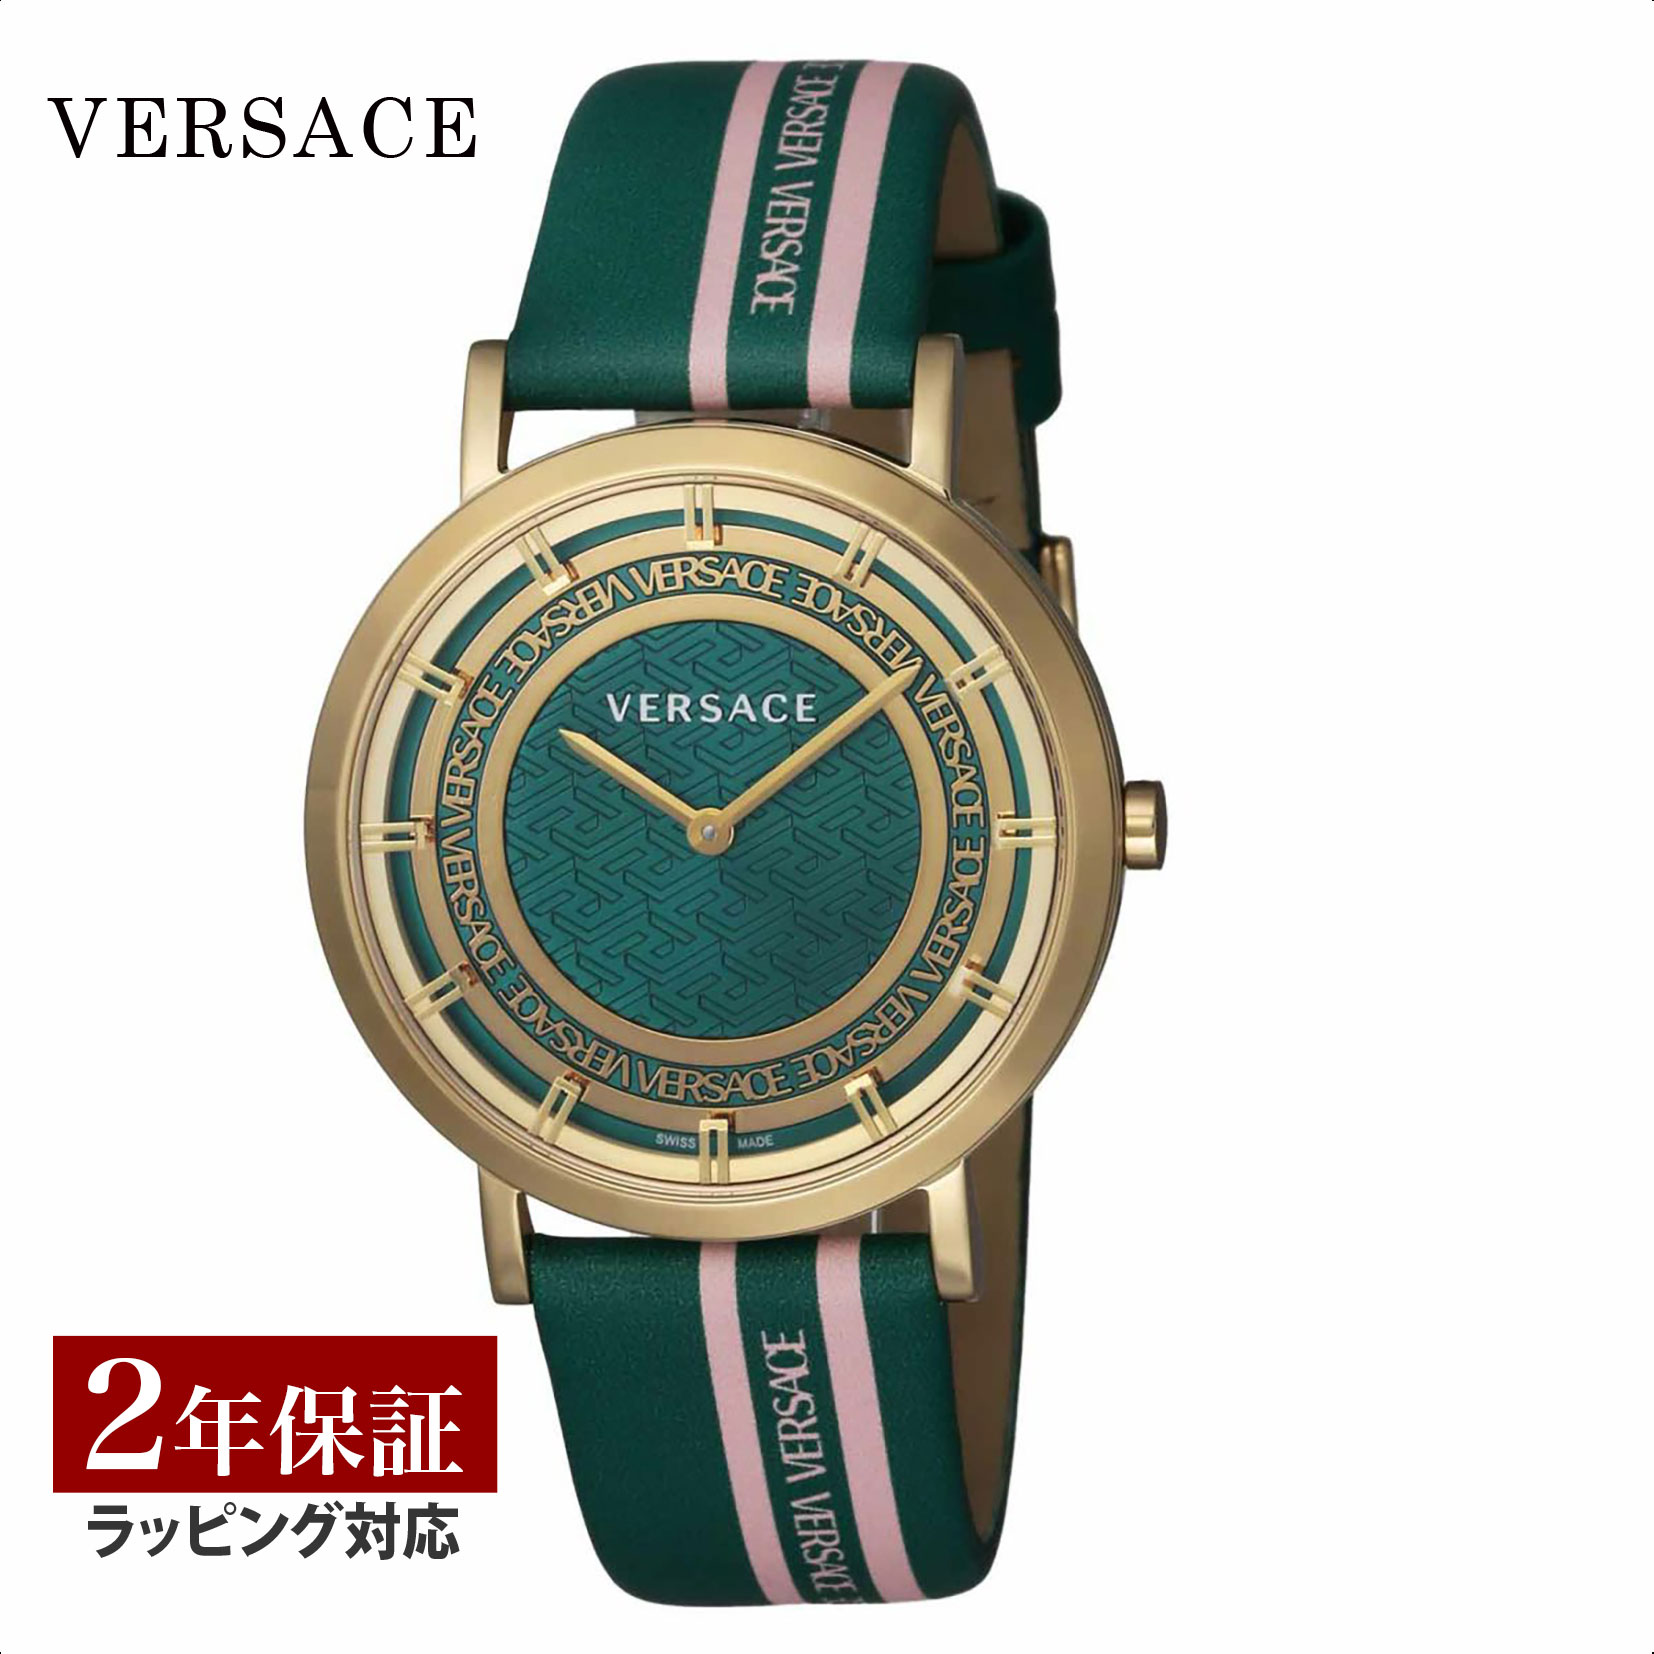  ヴェルサーチェ ヴェルサーチ VERSACE レディース 時計 VERSACE NEW GENERATION ニュージェネレーション クオーツ グリーン VE3M00322 時計 腕時計 高級腕時計 ブランド